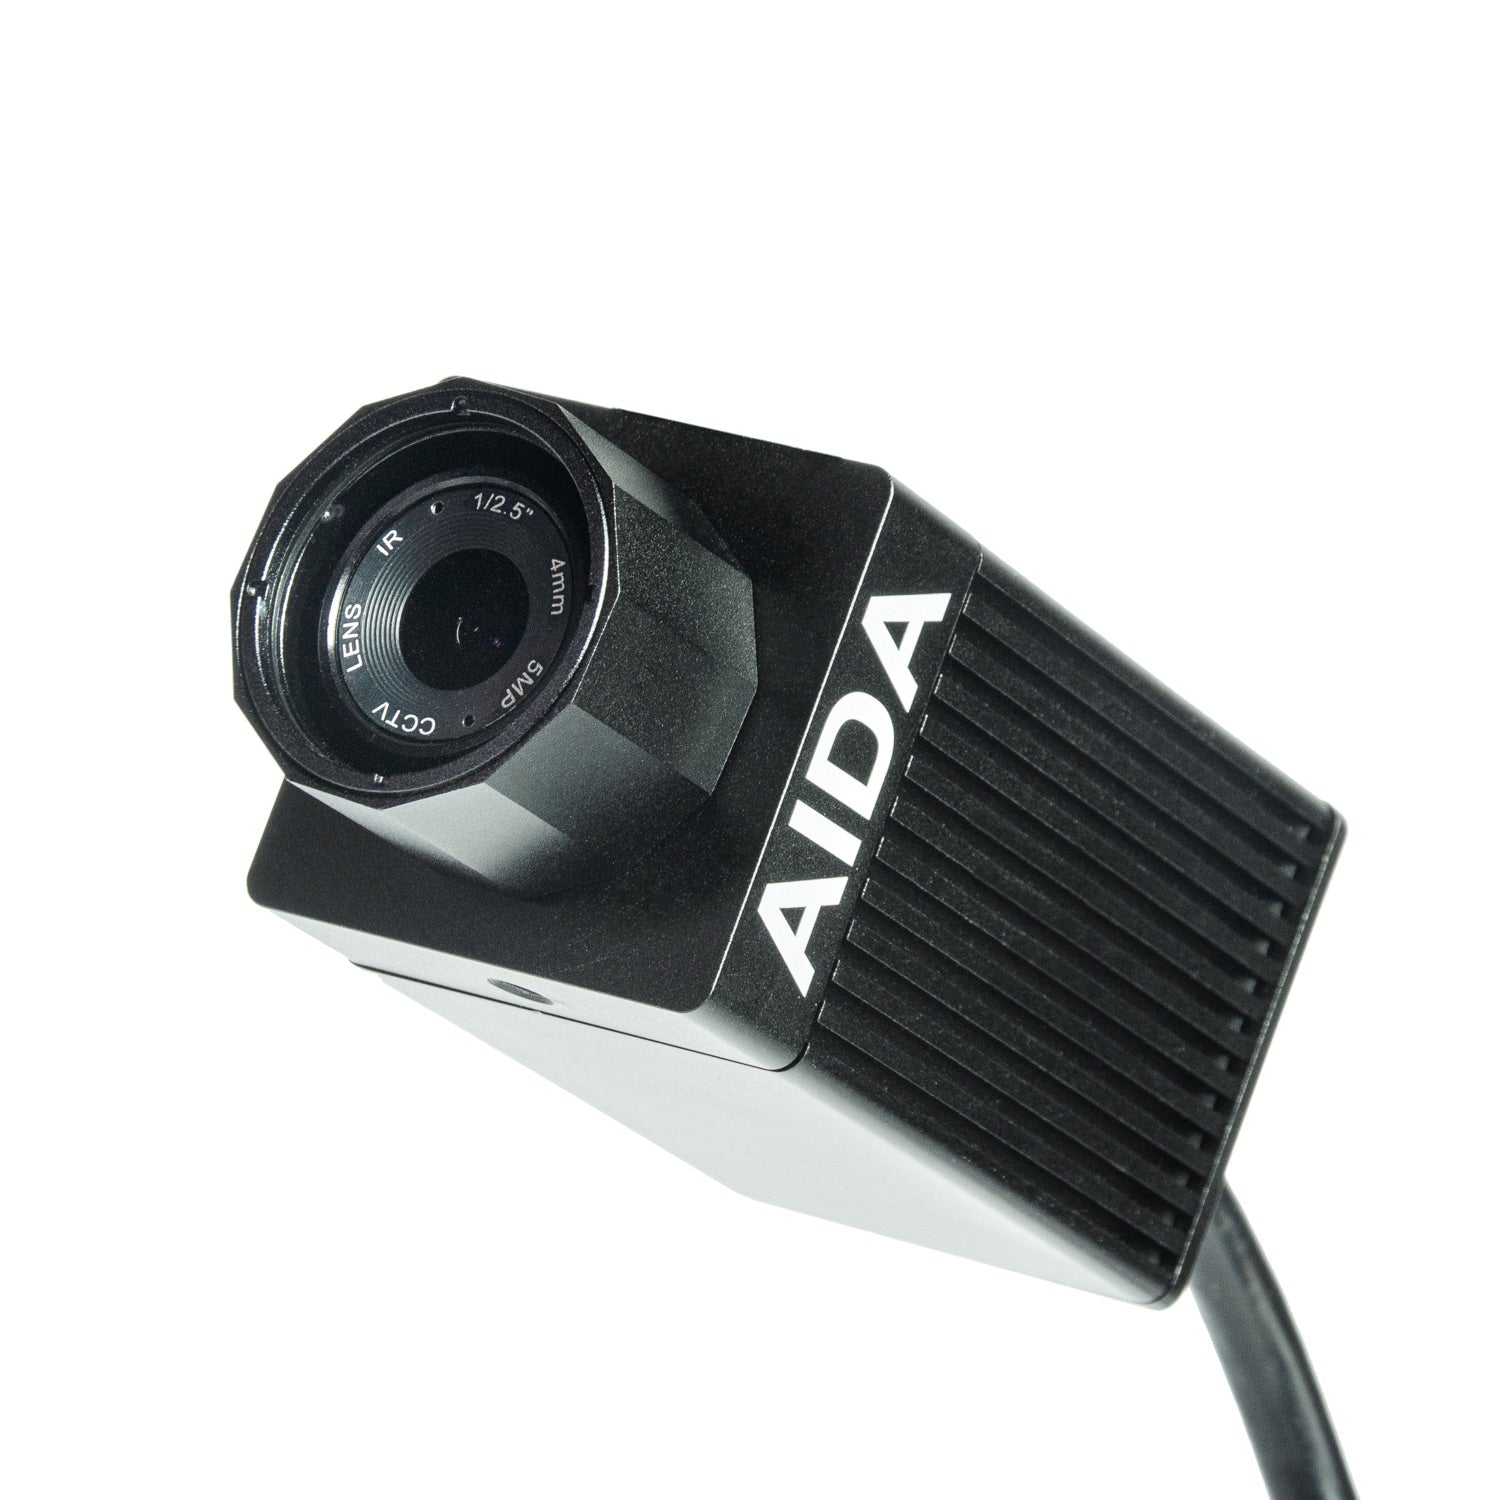 AIDA Imaging HD-NDI3-IP67 - HD NDI|HX3 Weatherproof POV Camera with 120fps, angled up